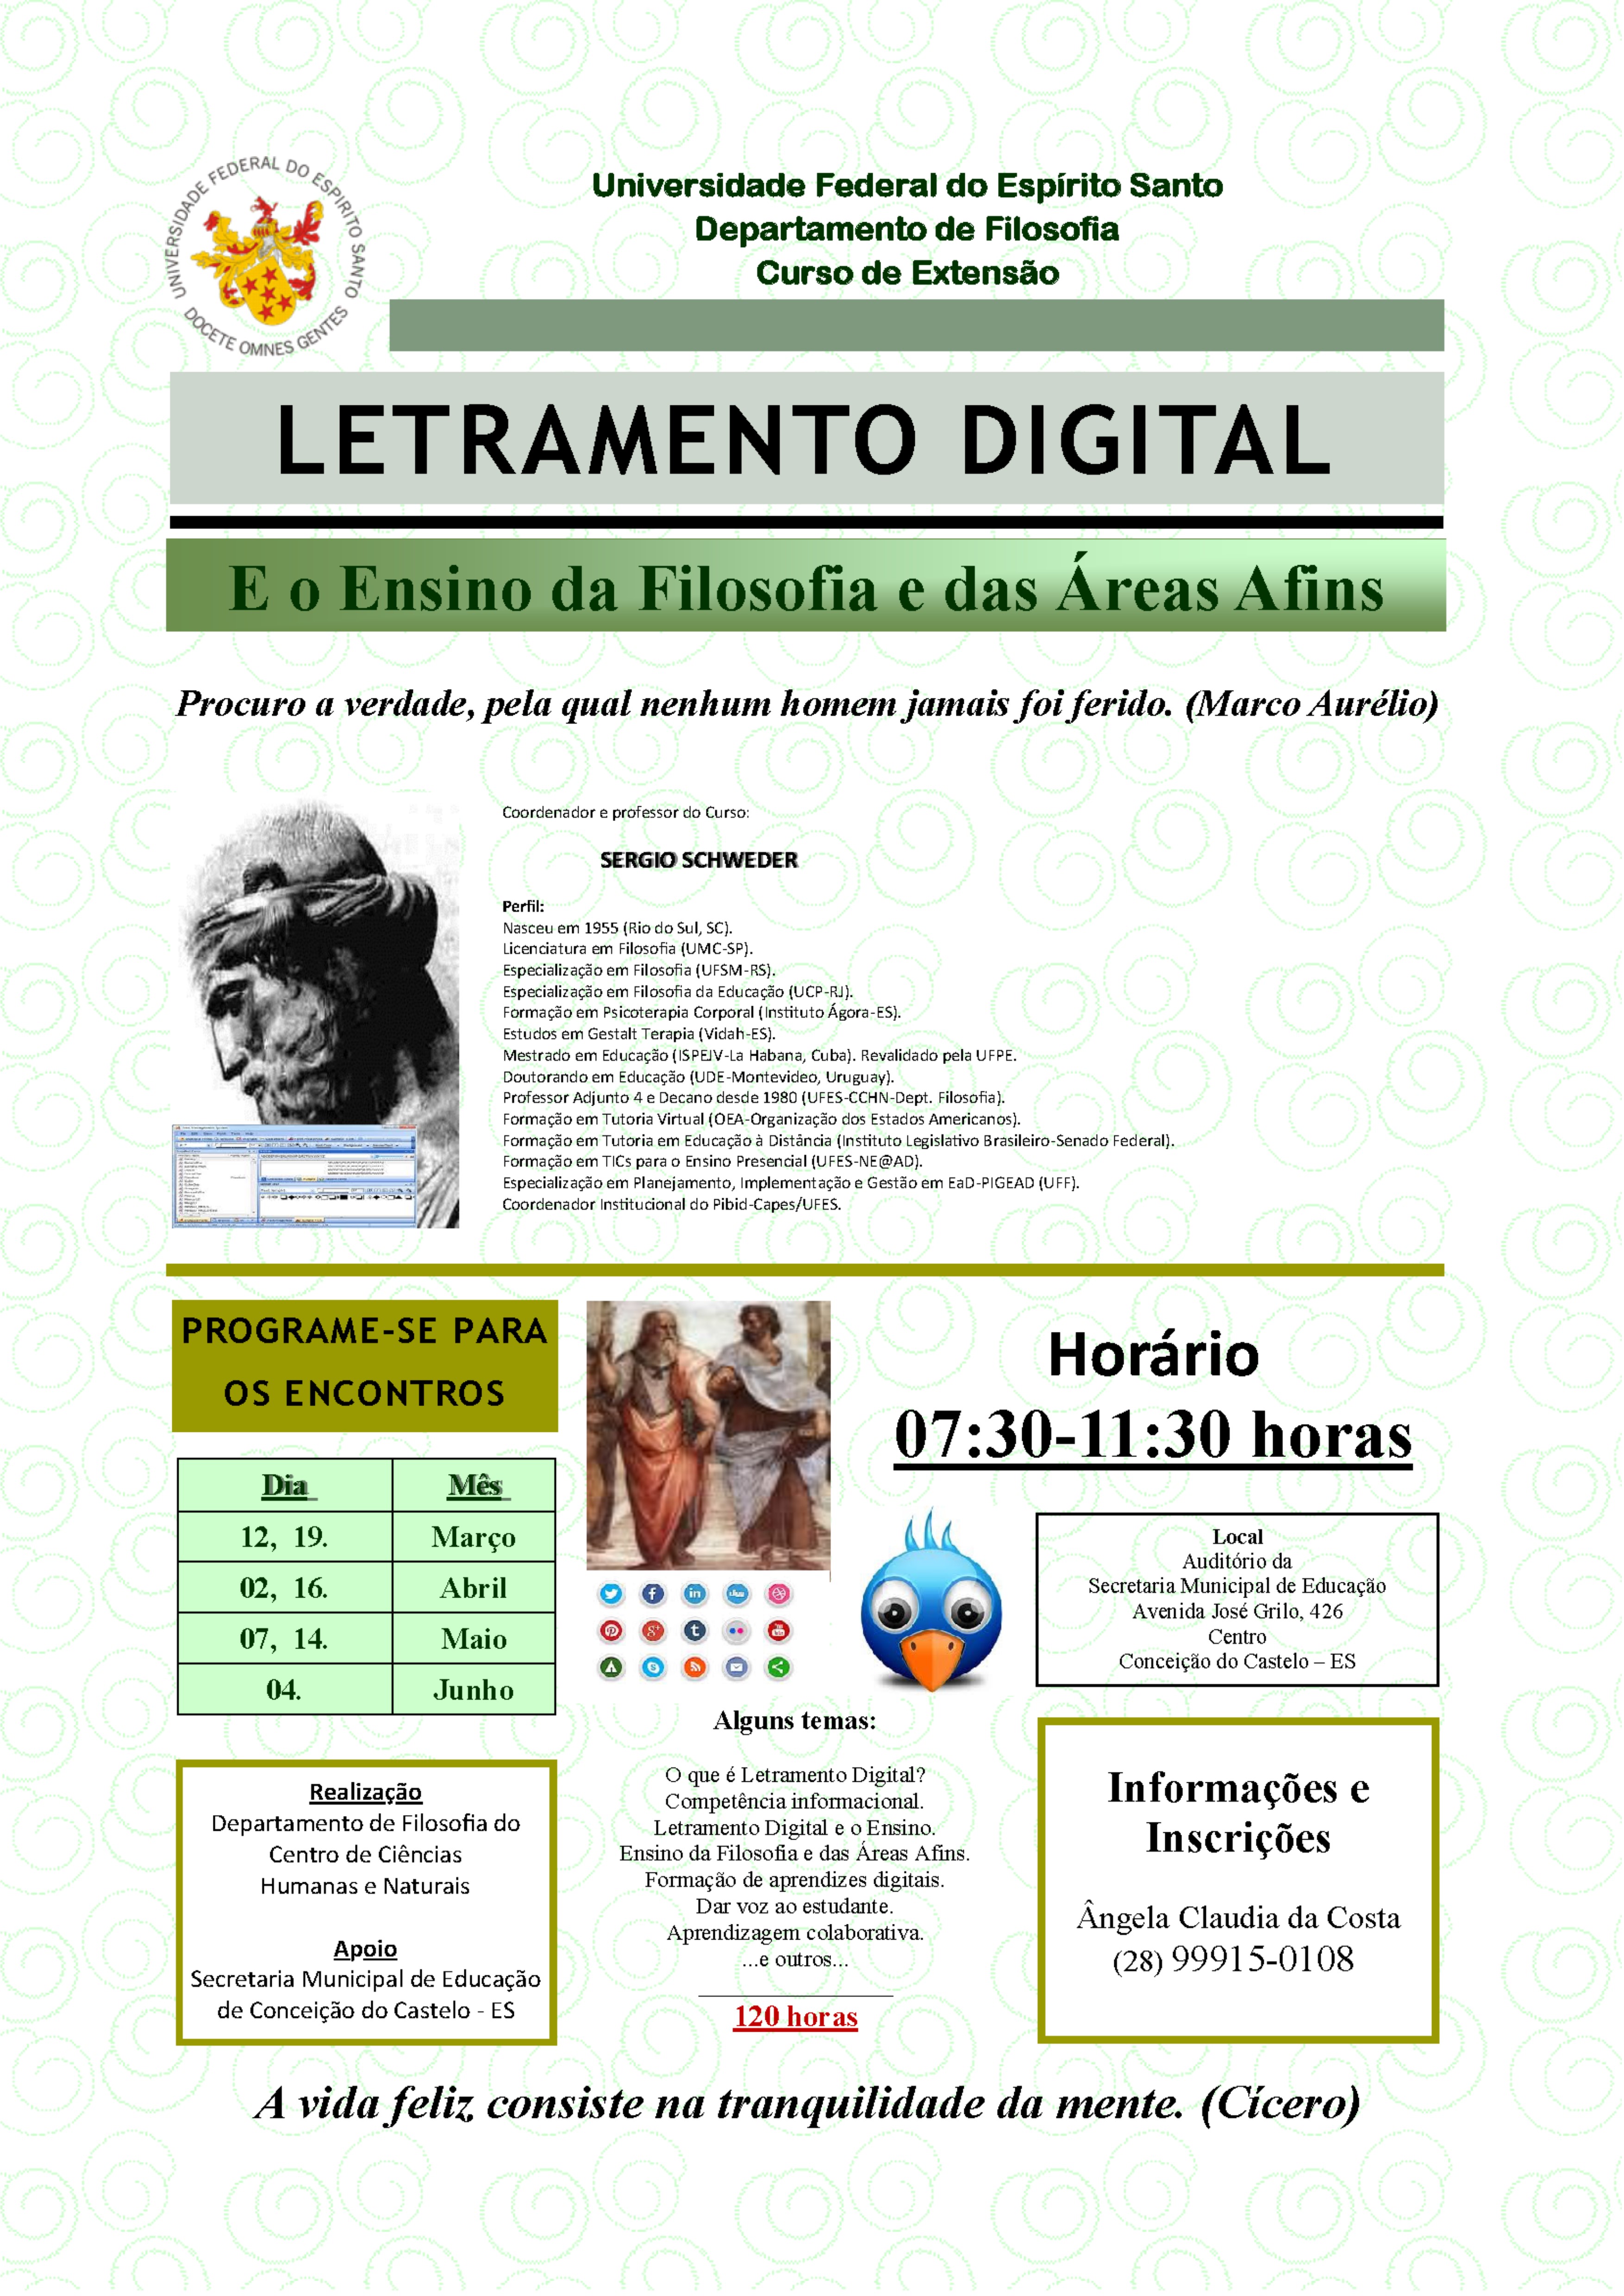 Conceição do Castelo promove curso de extensão pela UFES (Letramento Digital e o Ensino da Filosofia e das Áreas Afins) com início no dia 12 de março